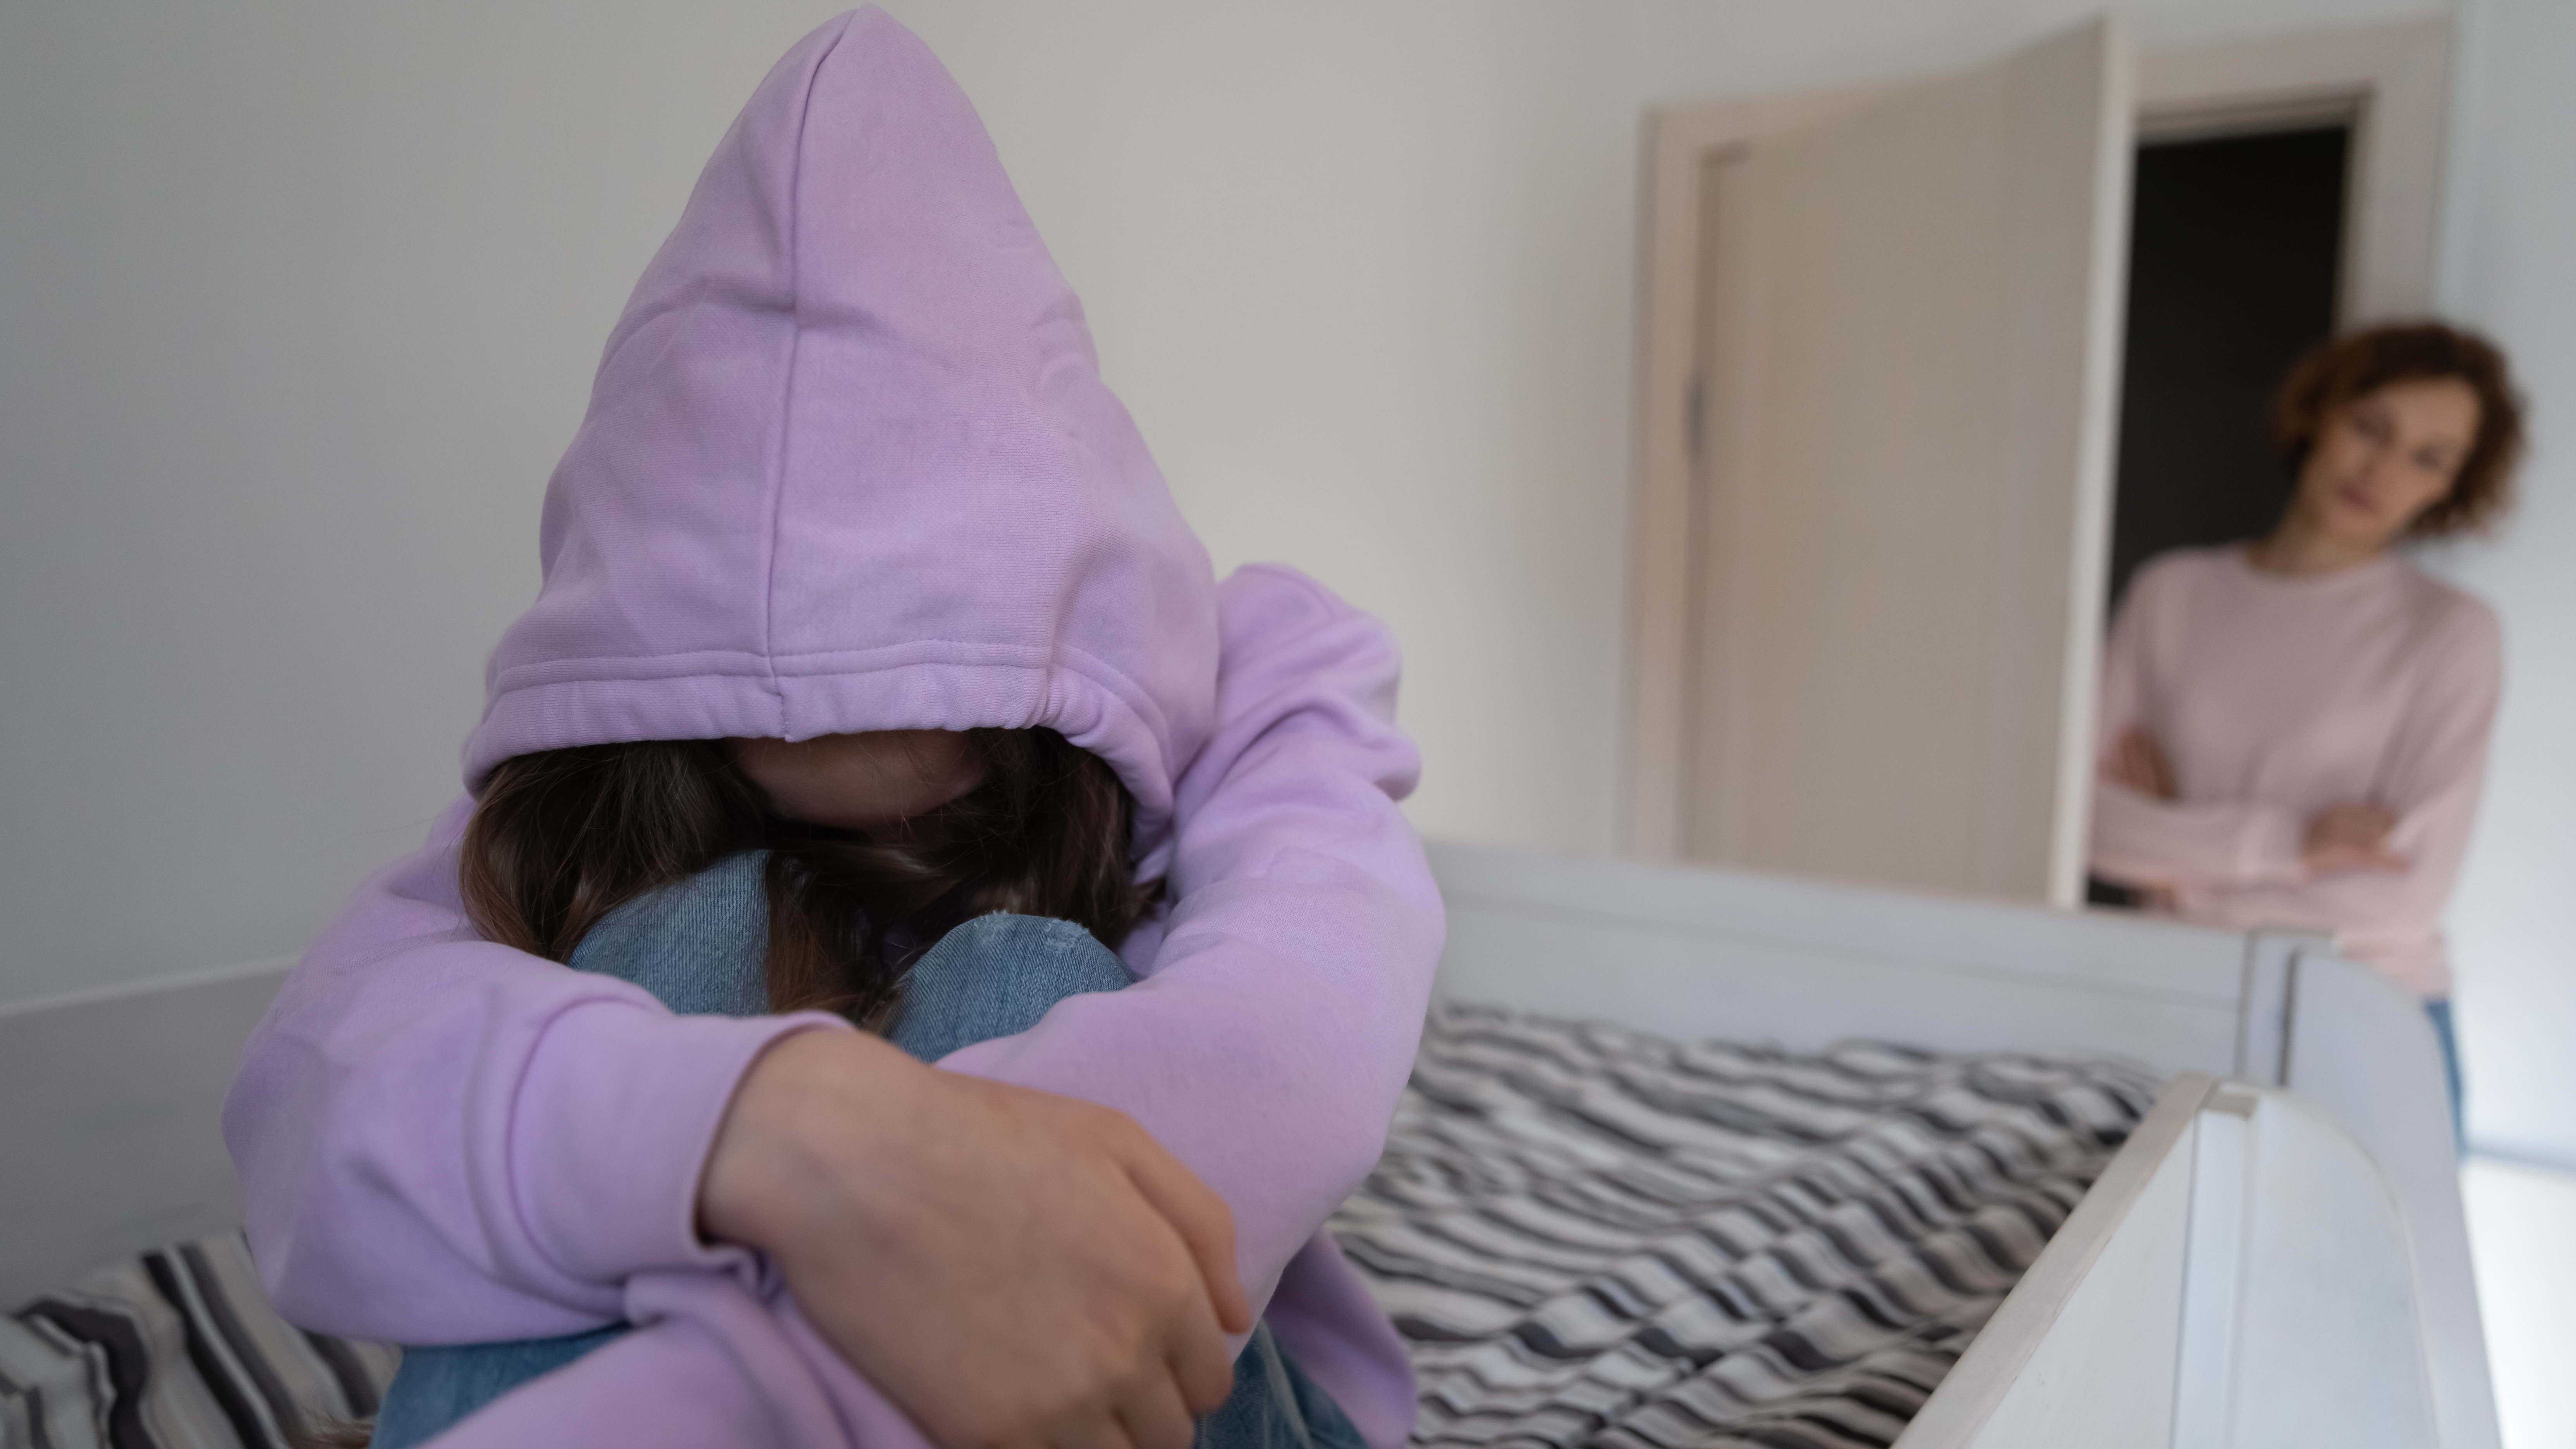 Ein junges Mädchen sitzt auf einem Bett und umarmt ihre Knie, während eine Frau von der Tür aus zusieht| Quelle: Shutterstock